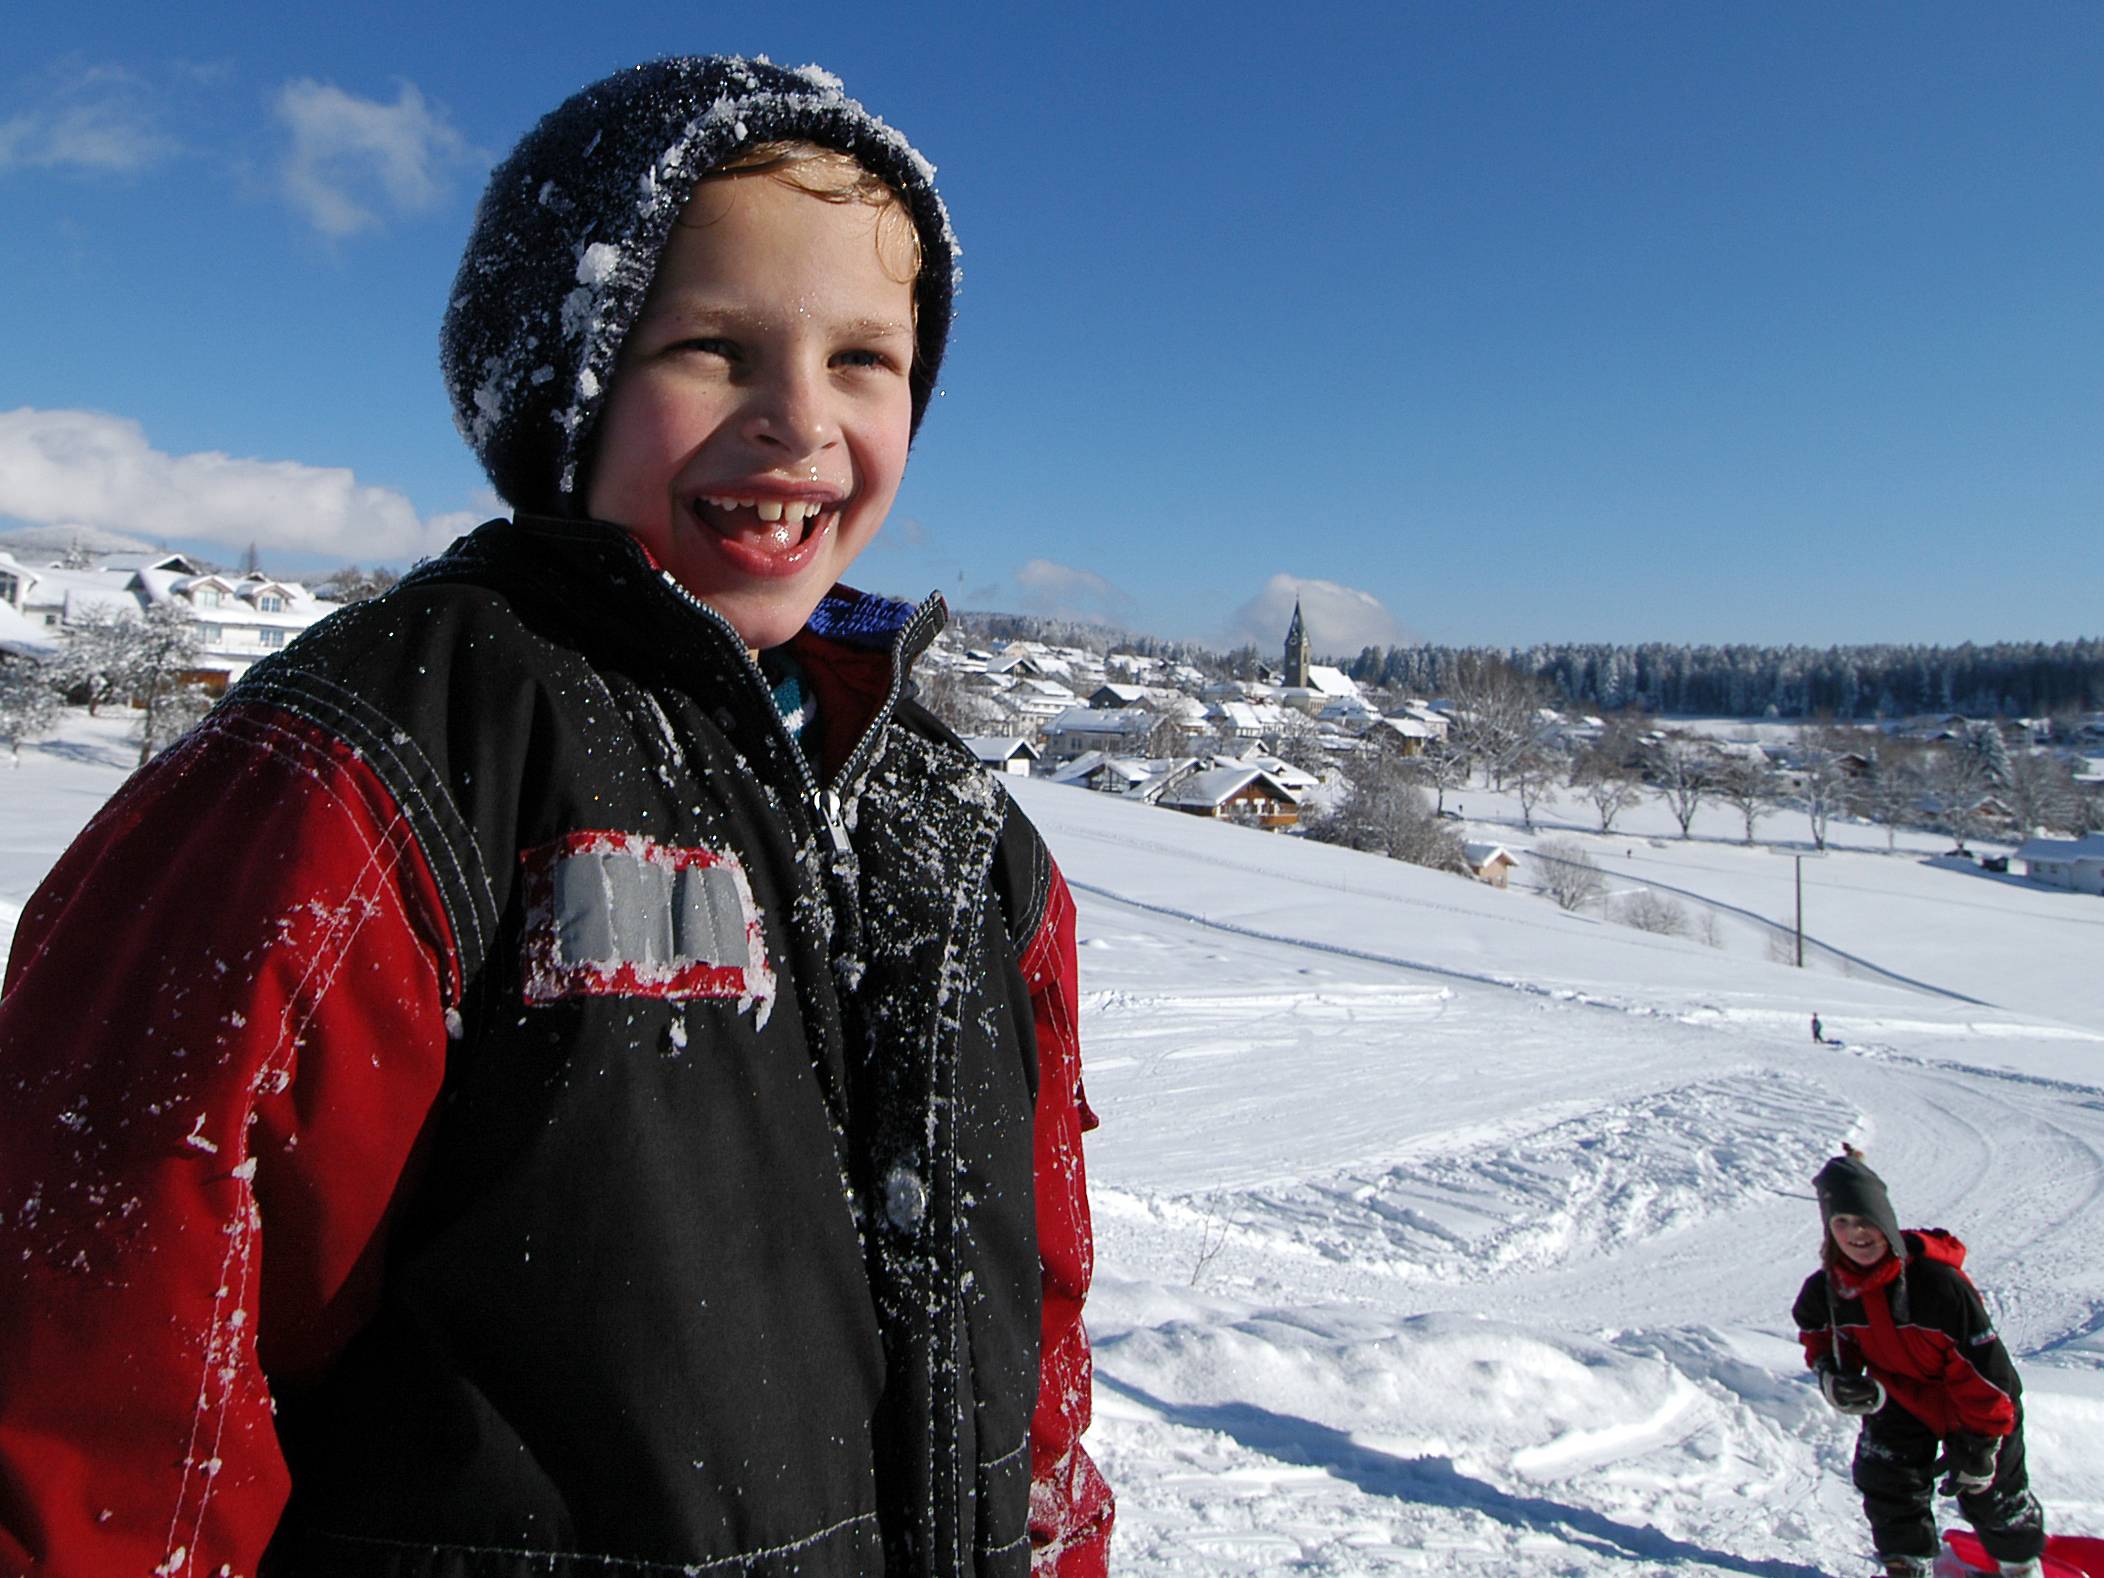  Lachender Junge im Schnee 